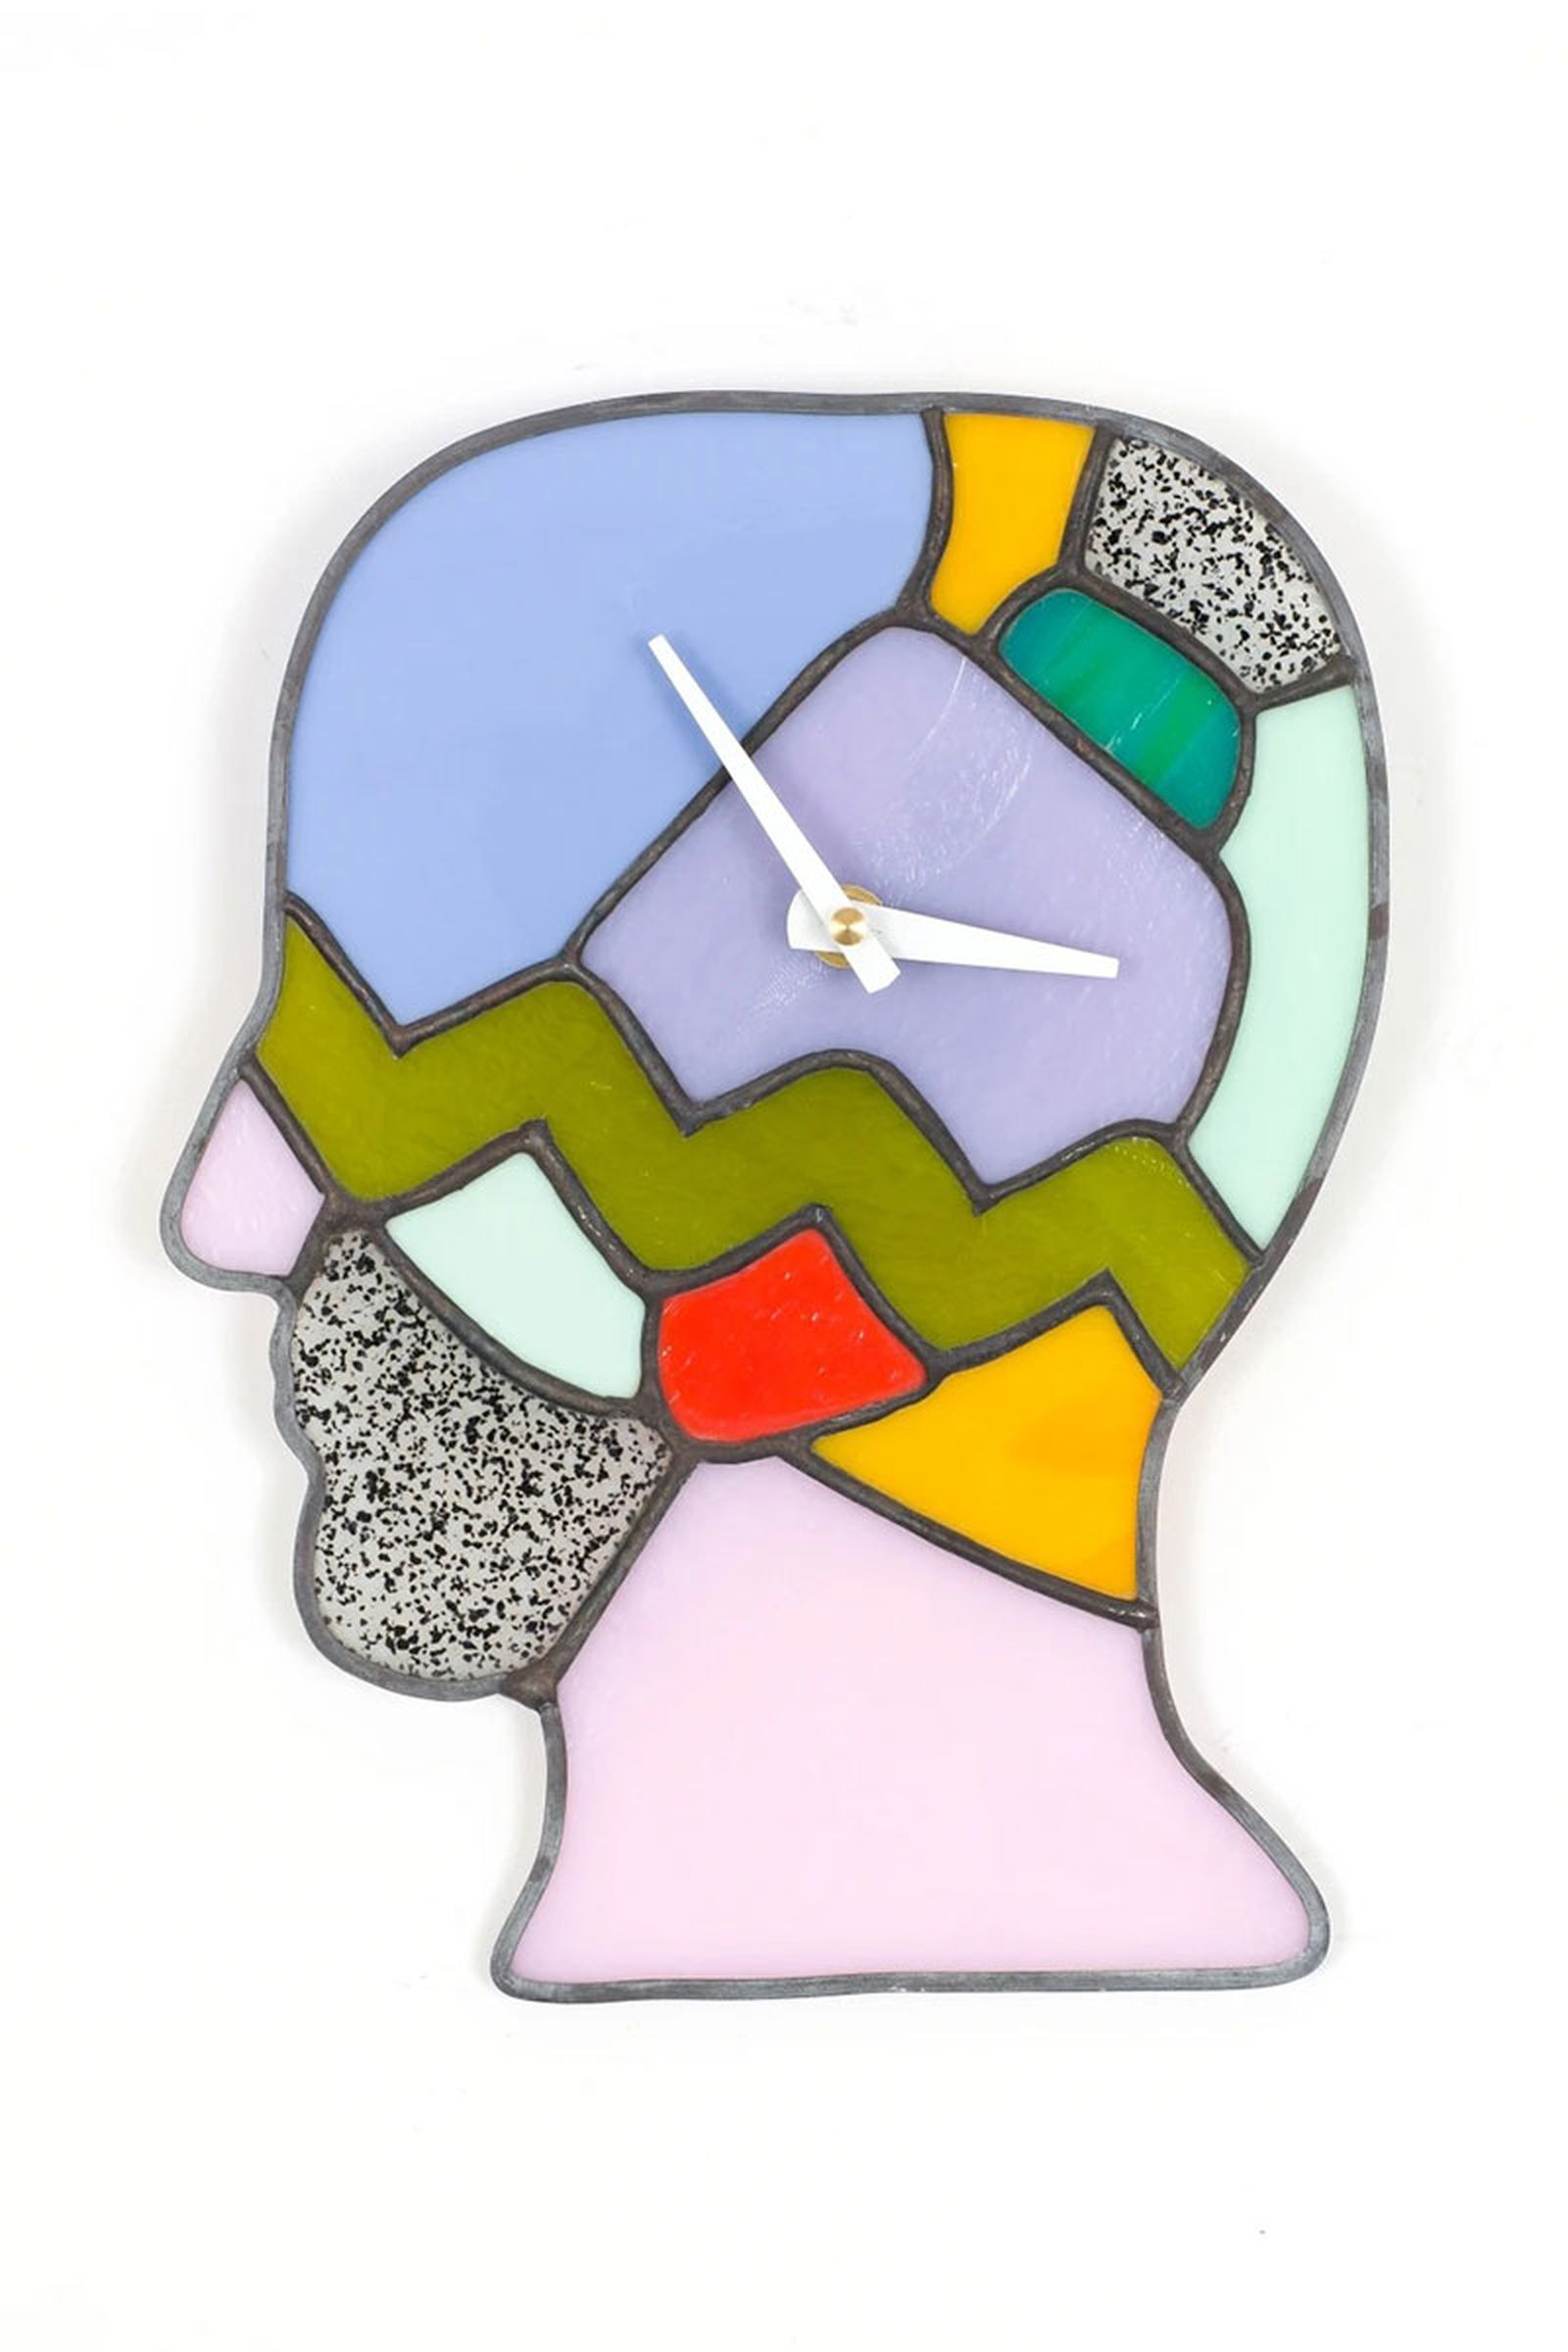 brain-dead-kerbi-urbanowski-stained-glass-clocks-(6)